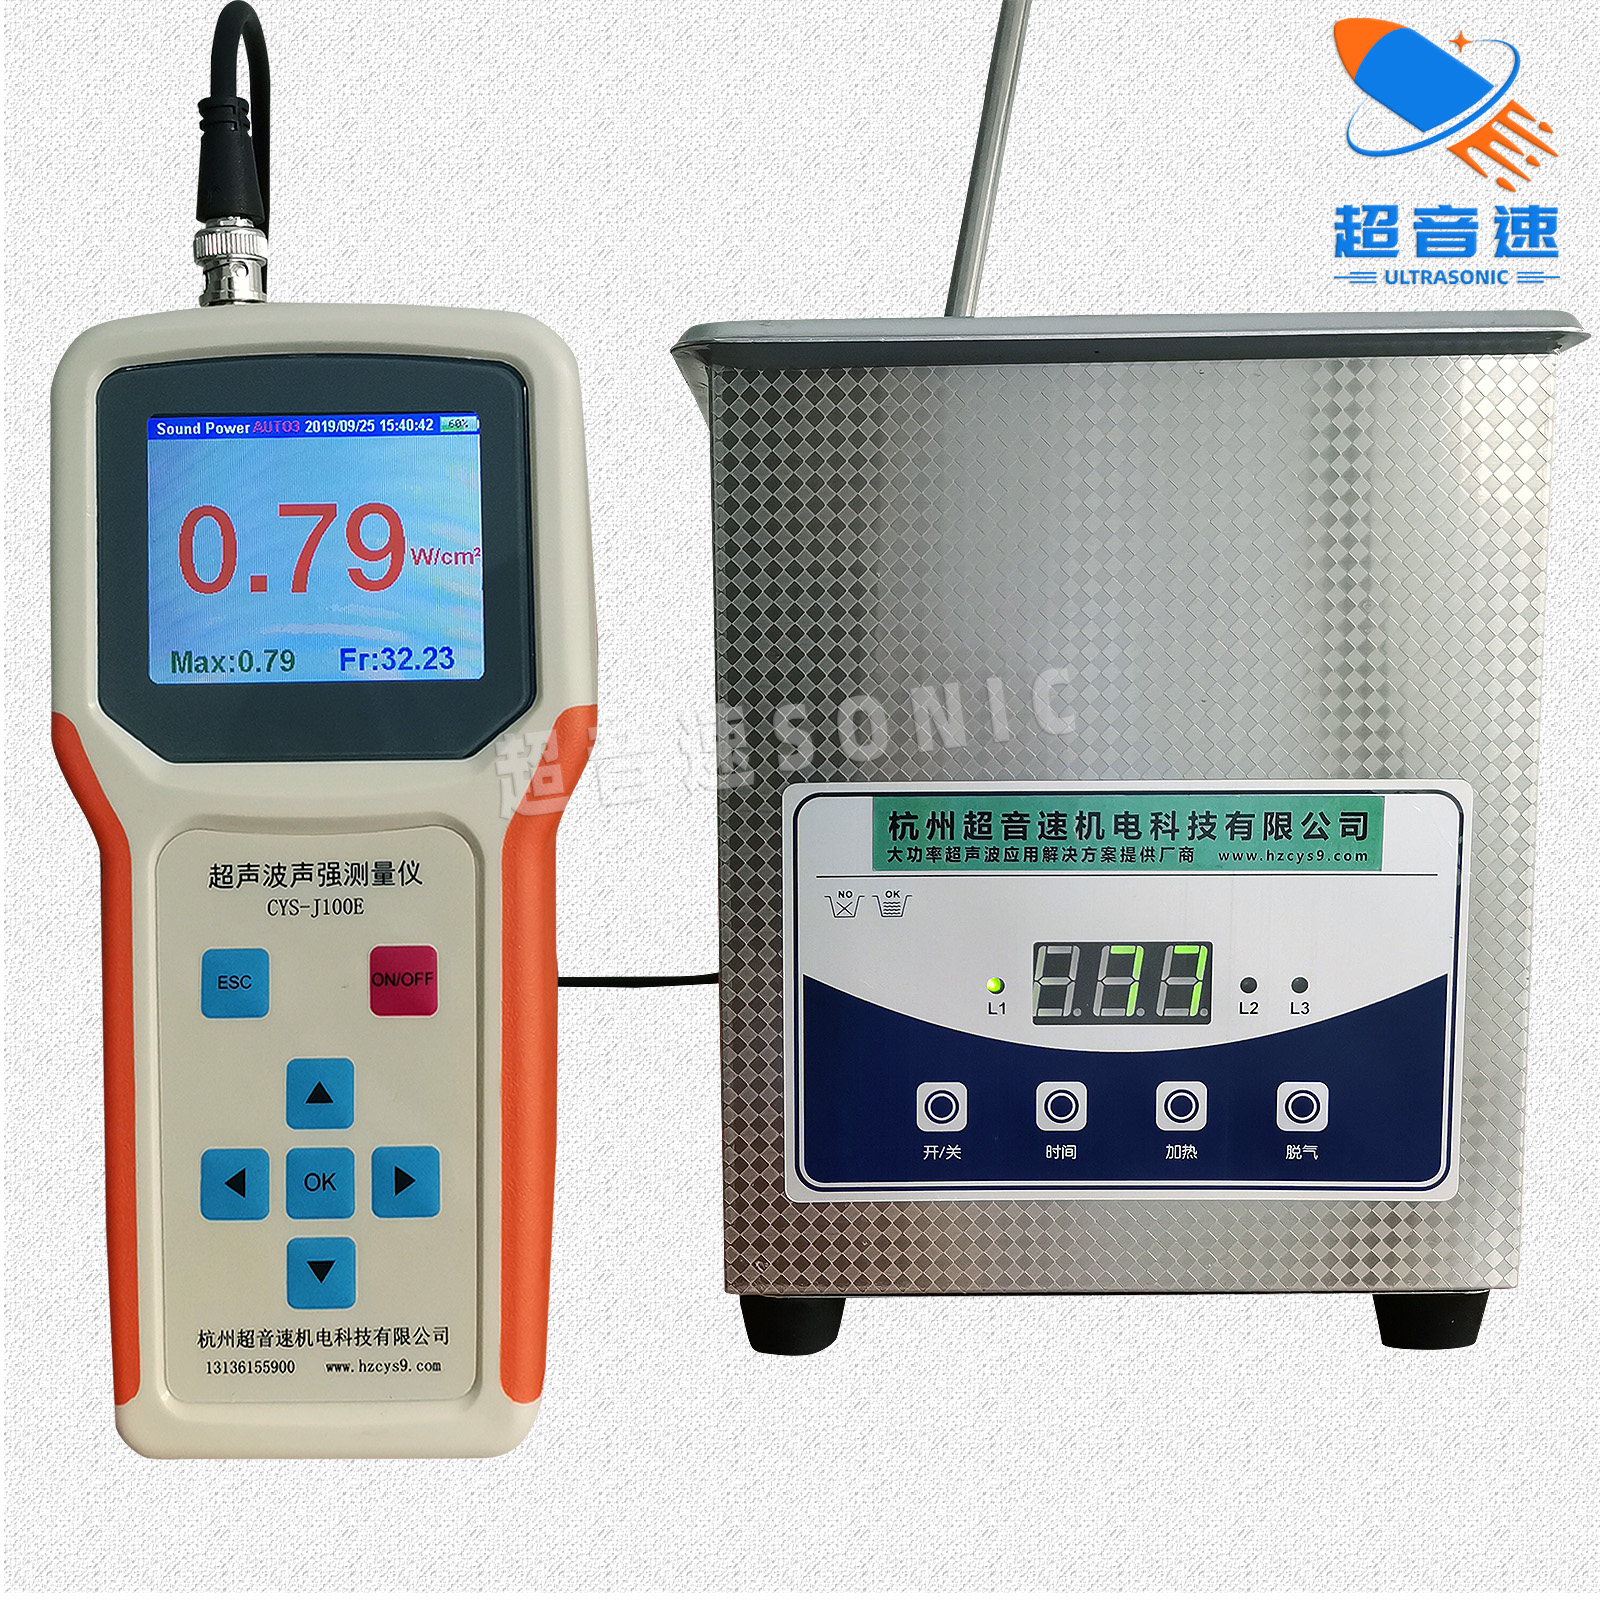 超声波声强测量仪设备厂家; 杭州超声波声强测量仪使用方法; 精密型超声波声强测量仪